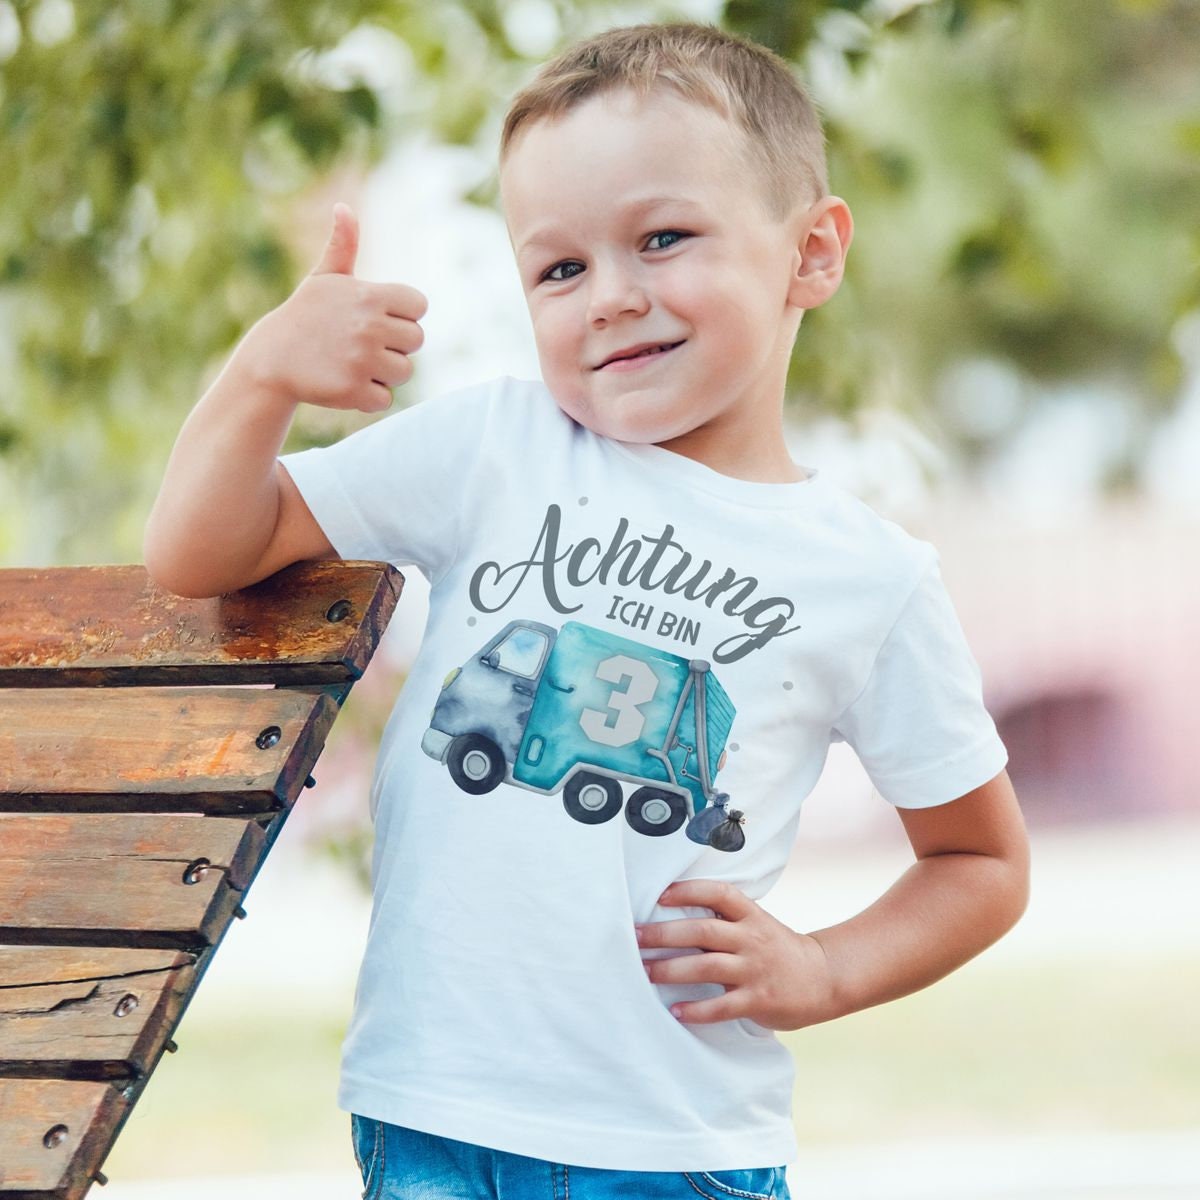 Kinder T-Shirt for Sale mit Müllabfuhr Müllauto Müllwagen von